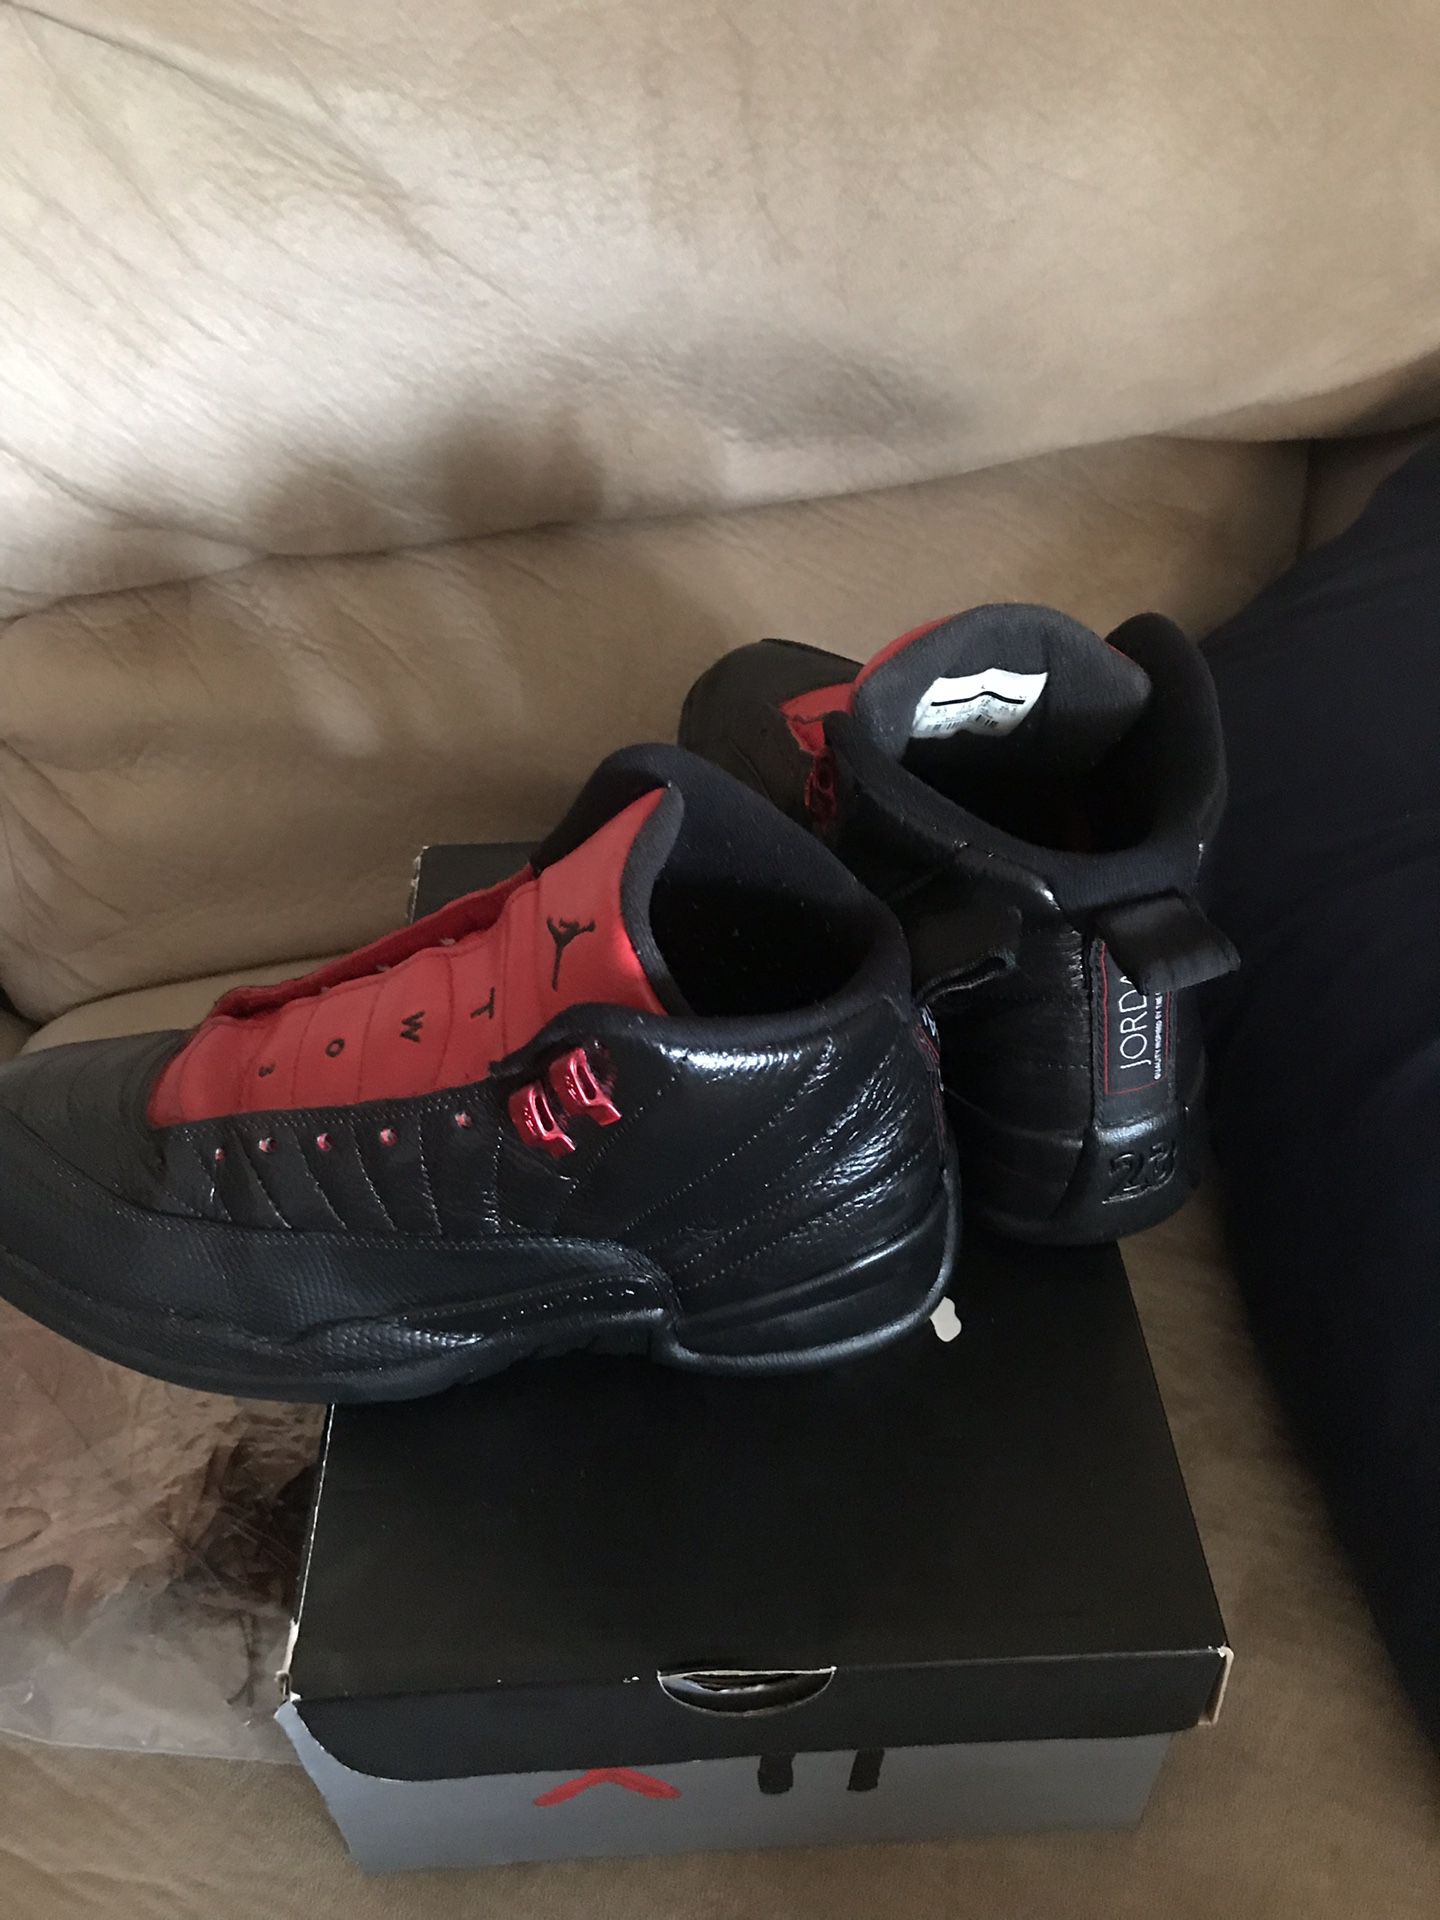 Jordan 12 size 8.5